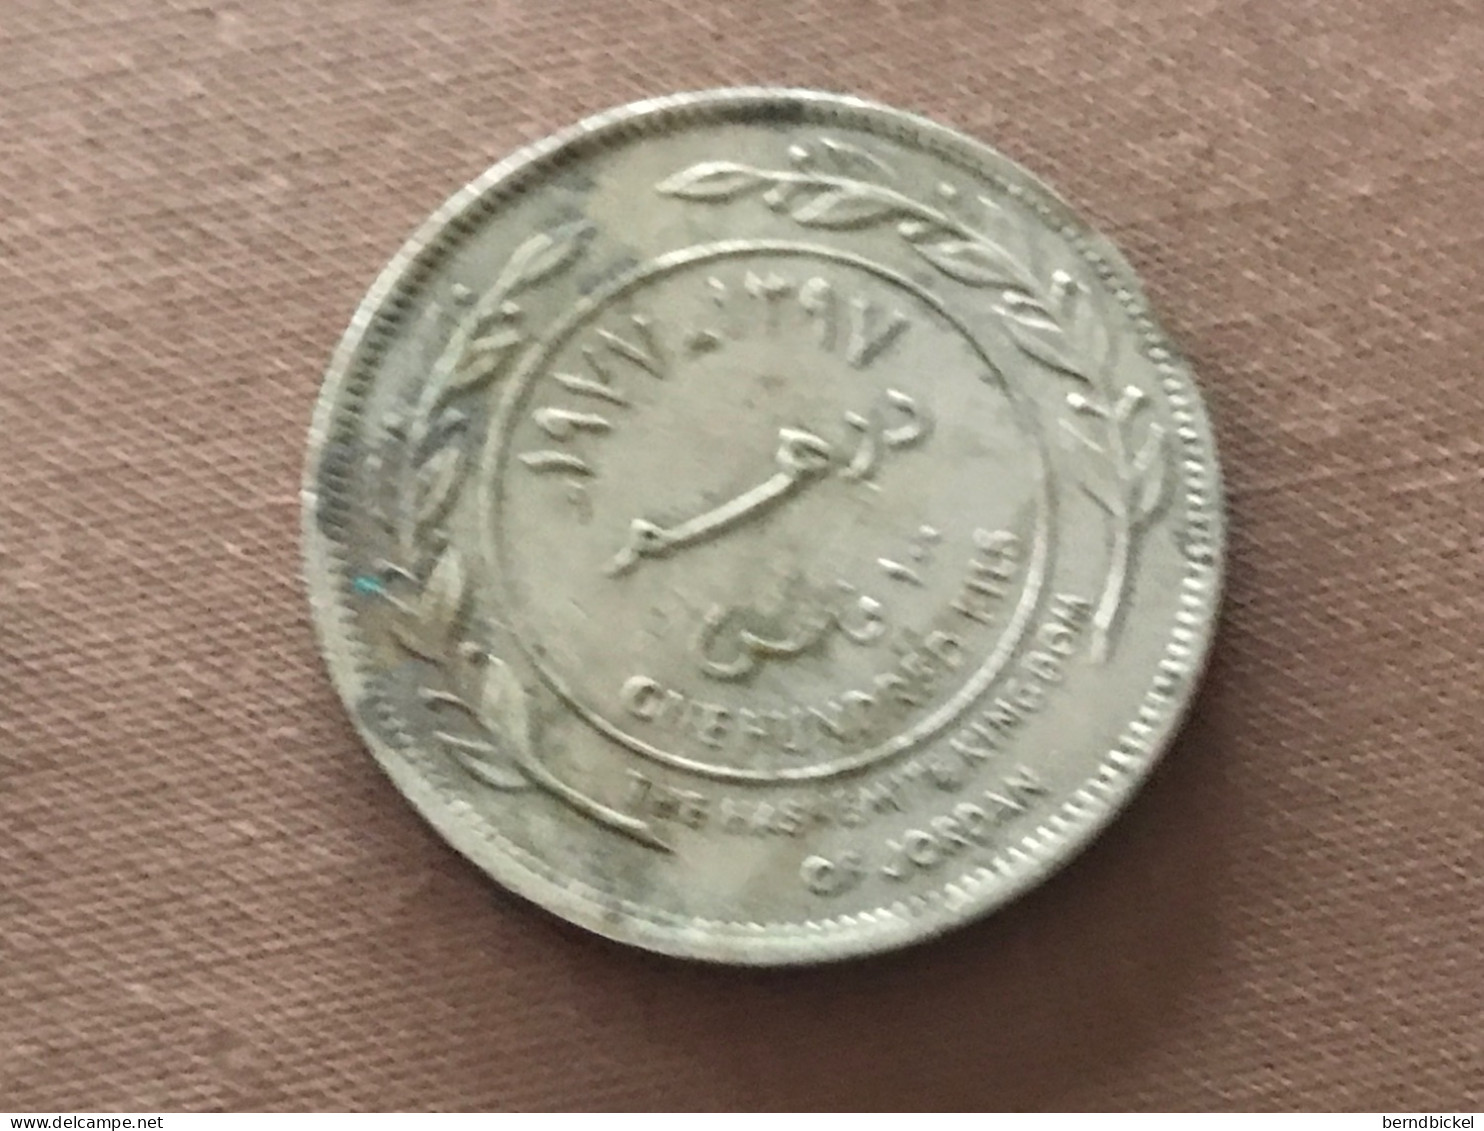 Münze Münzen Umlaufmünze Jordanien 100 Fils 1977 - Jordanië